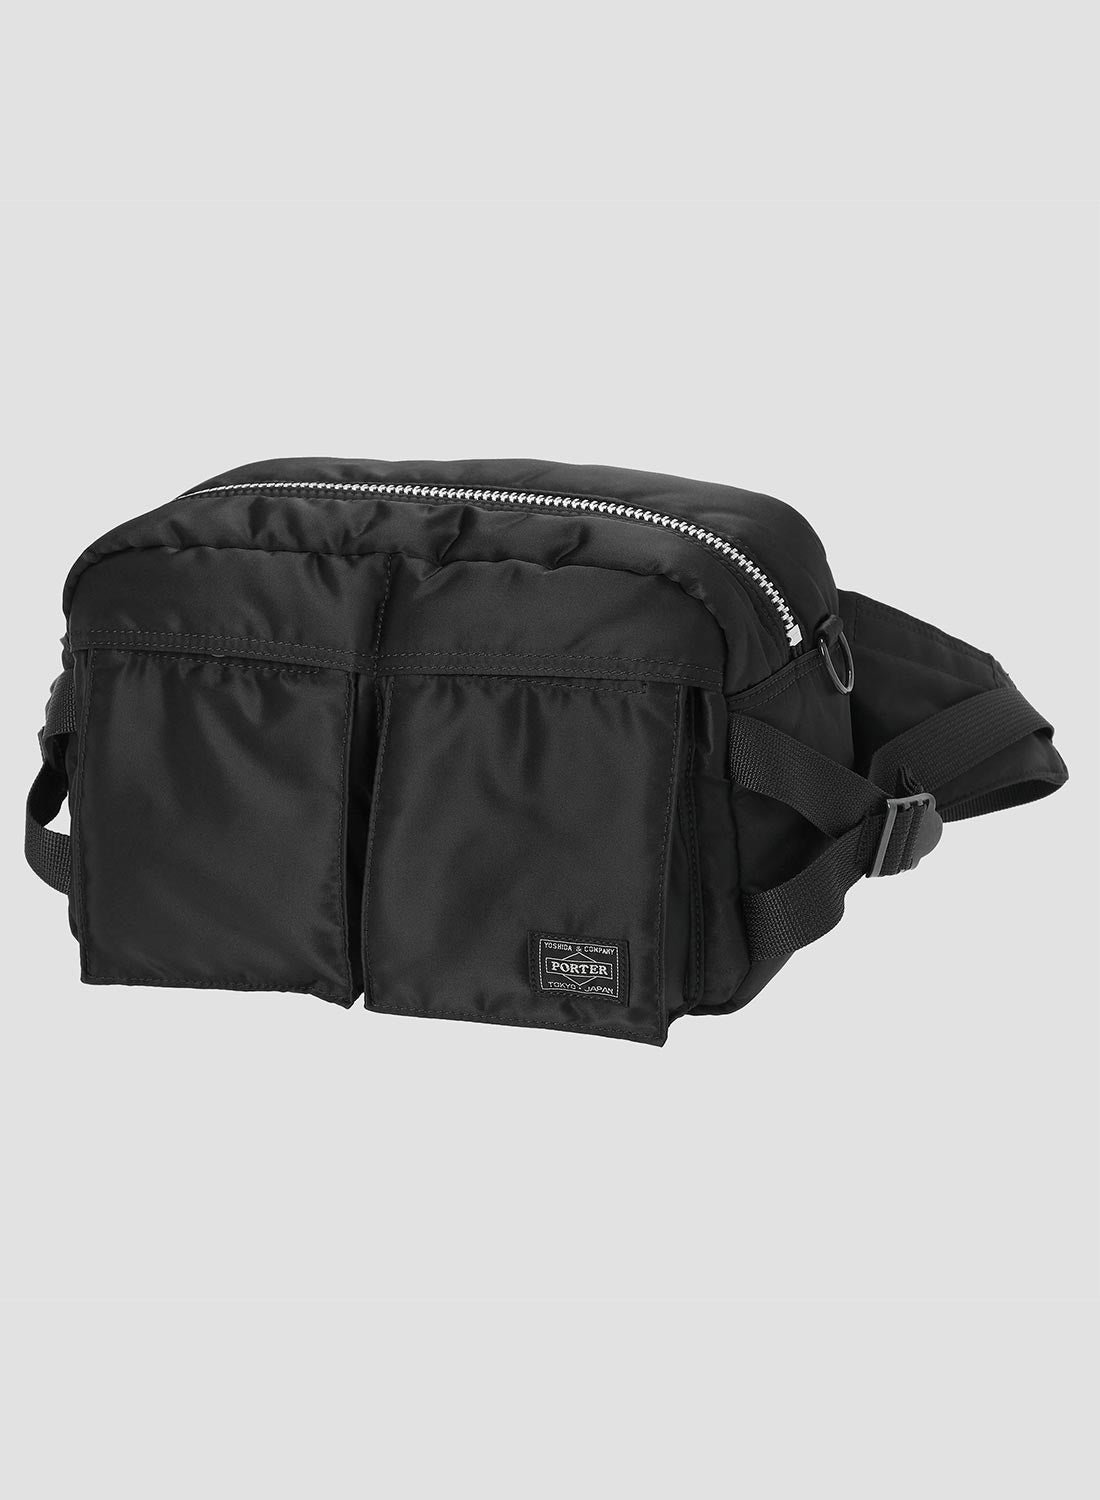 Porter-Yoshida & Co Tanker Waist Bag in Black - 1